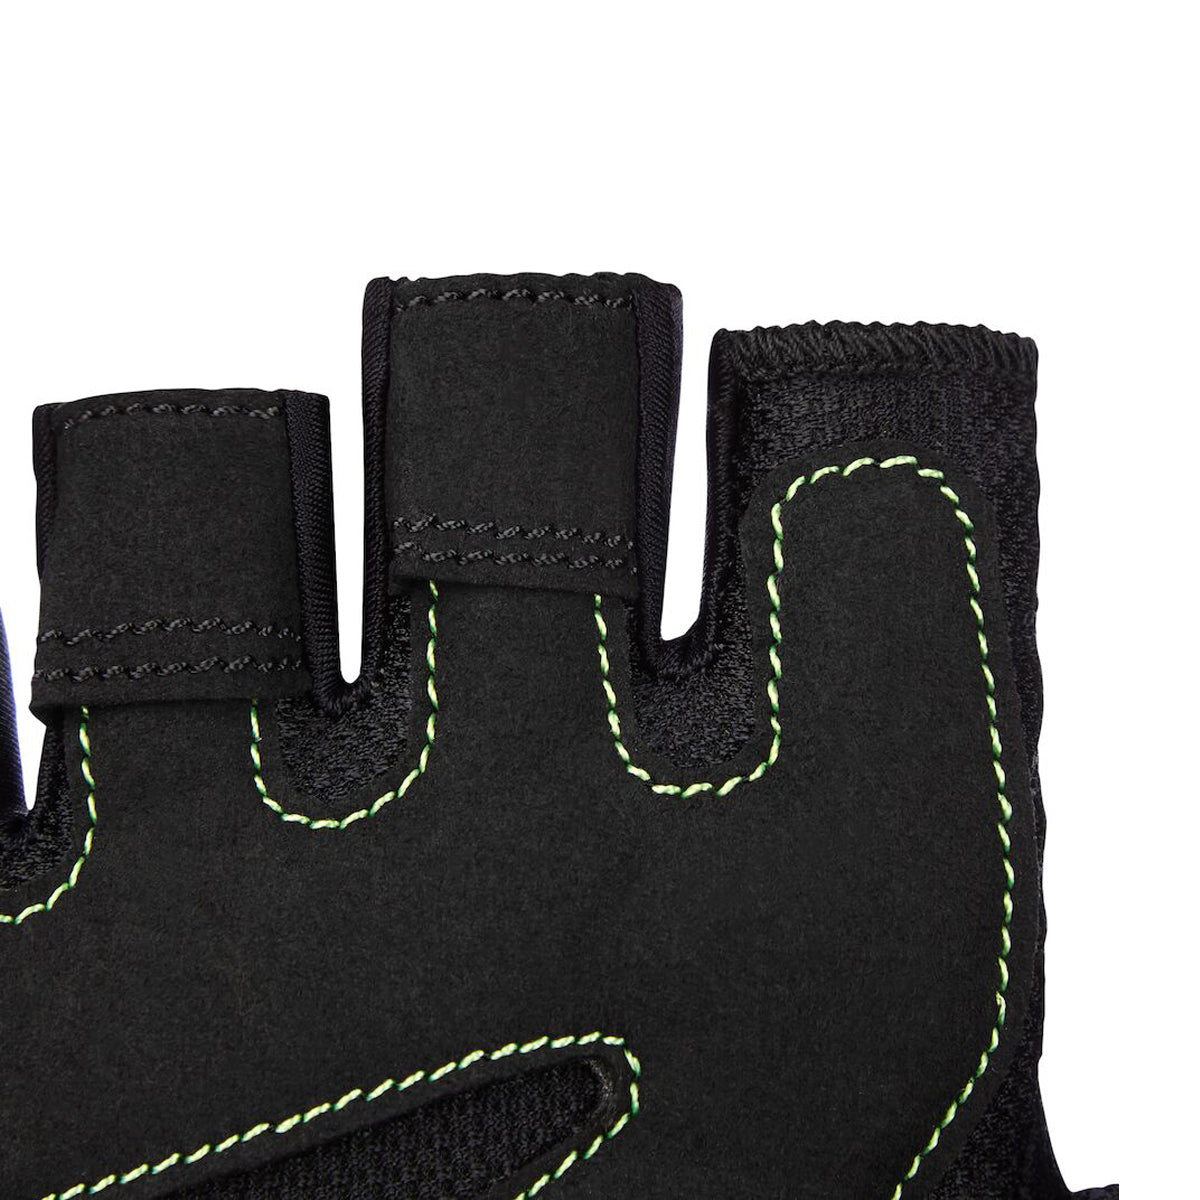 Mfg150 Fitness Gloves